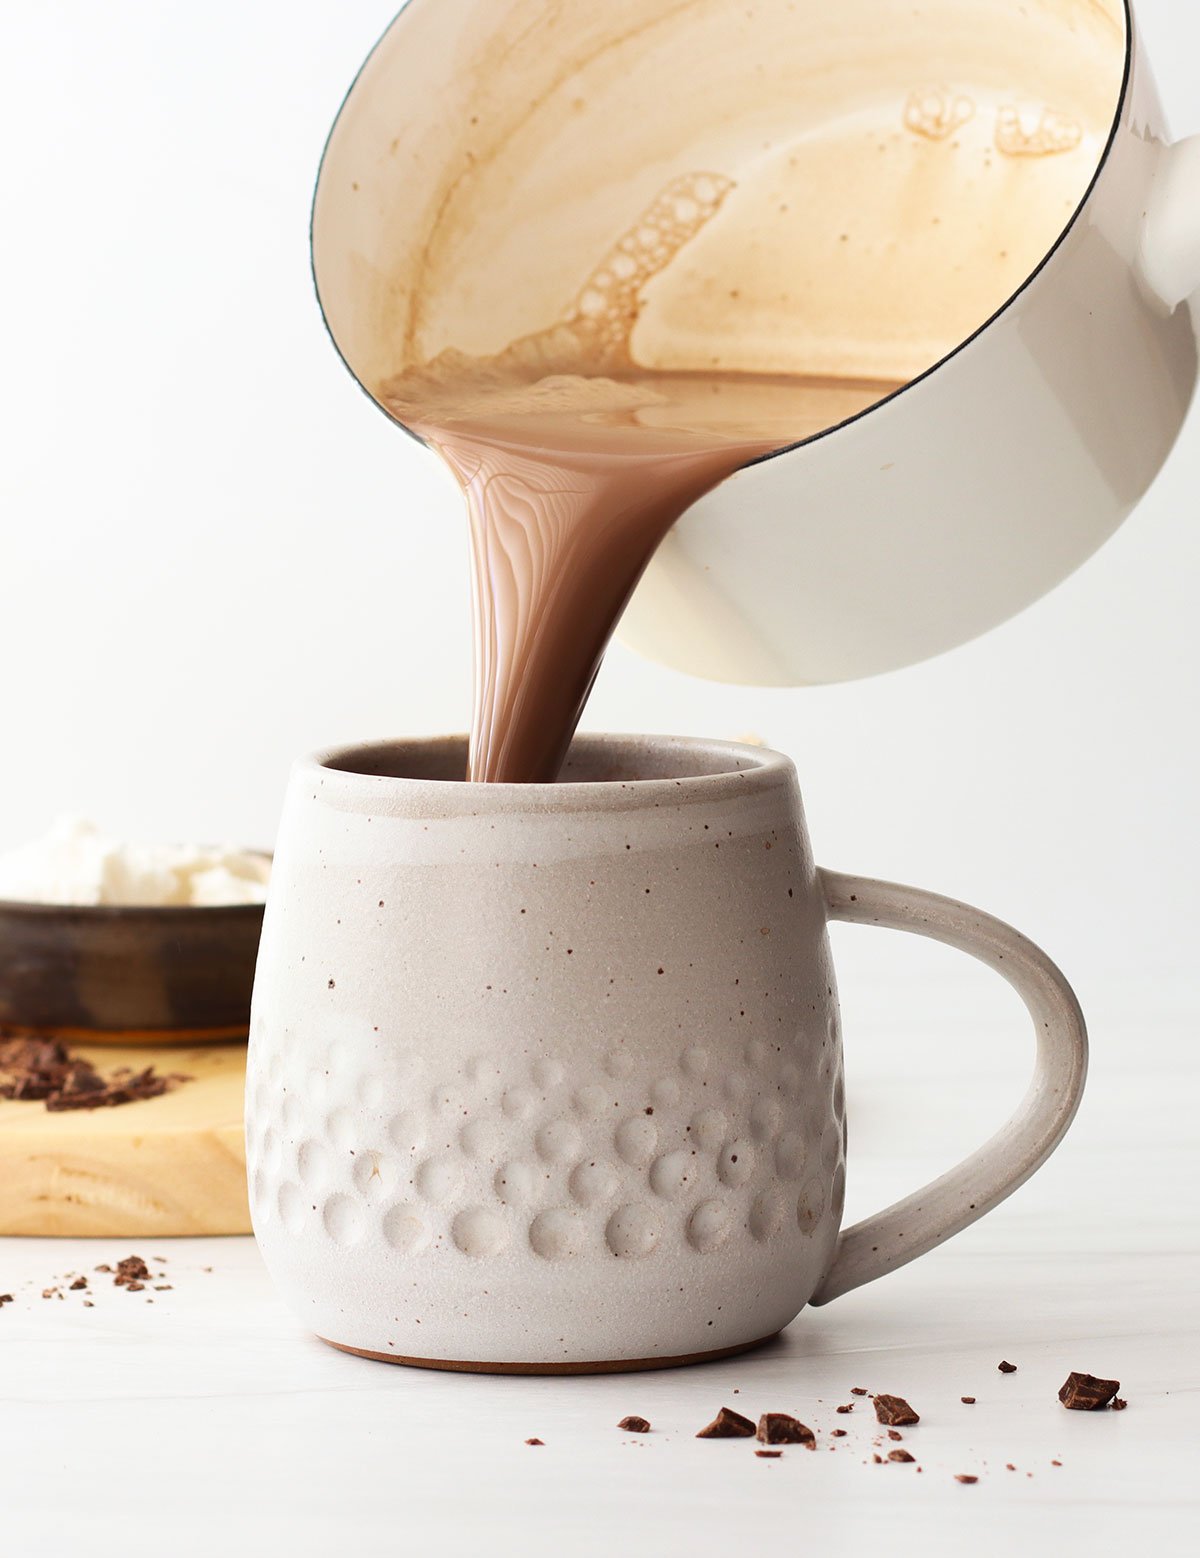 https://detoxinista.com/wp-content/uploads/2022/03/hot-chocolate-poured-into-mug.jpg